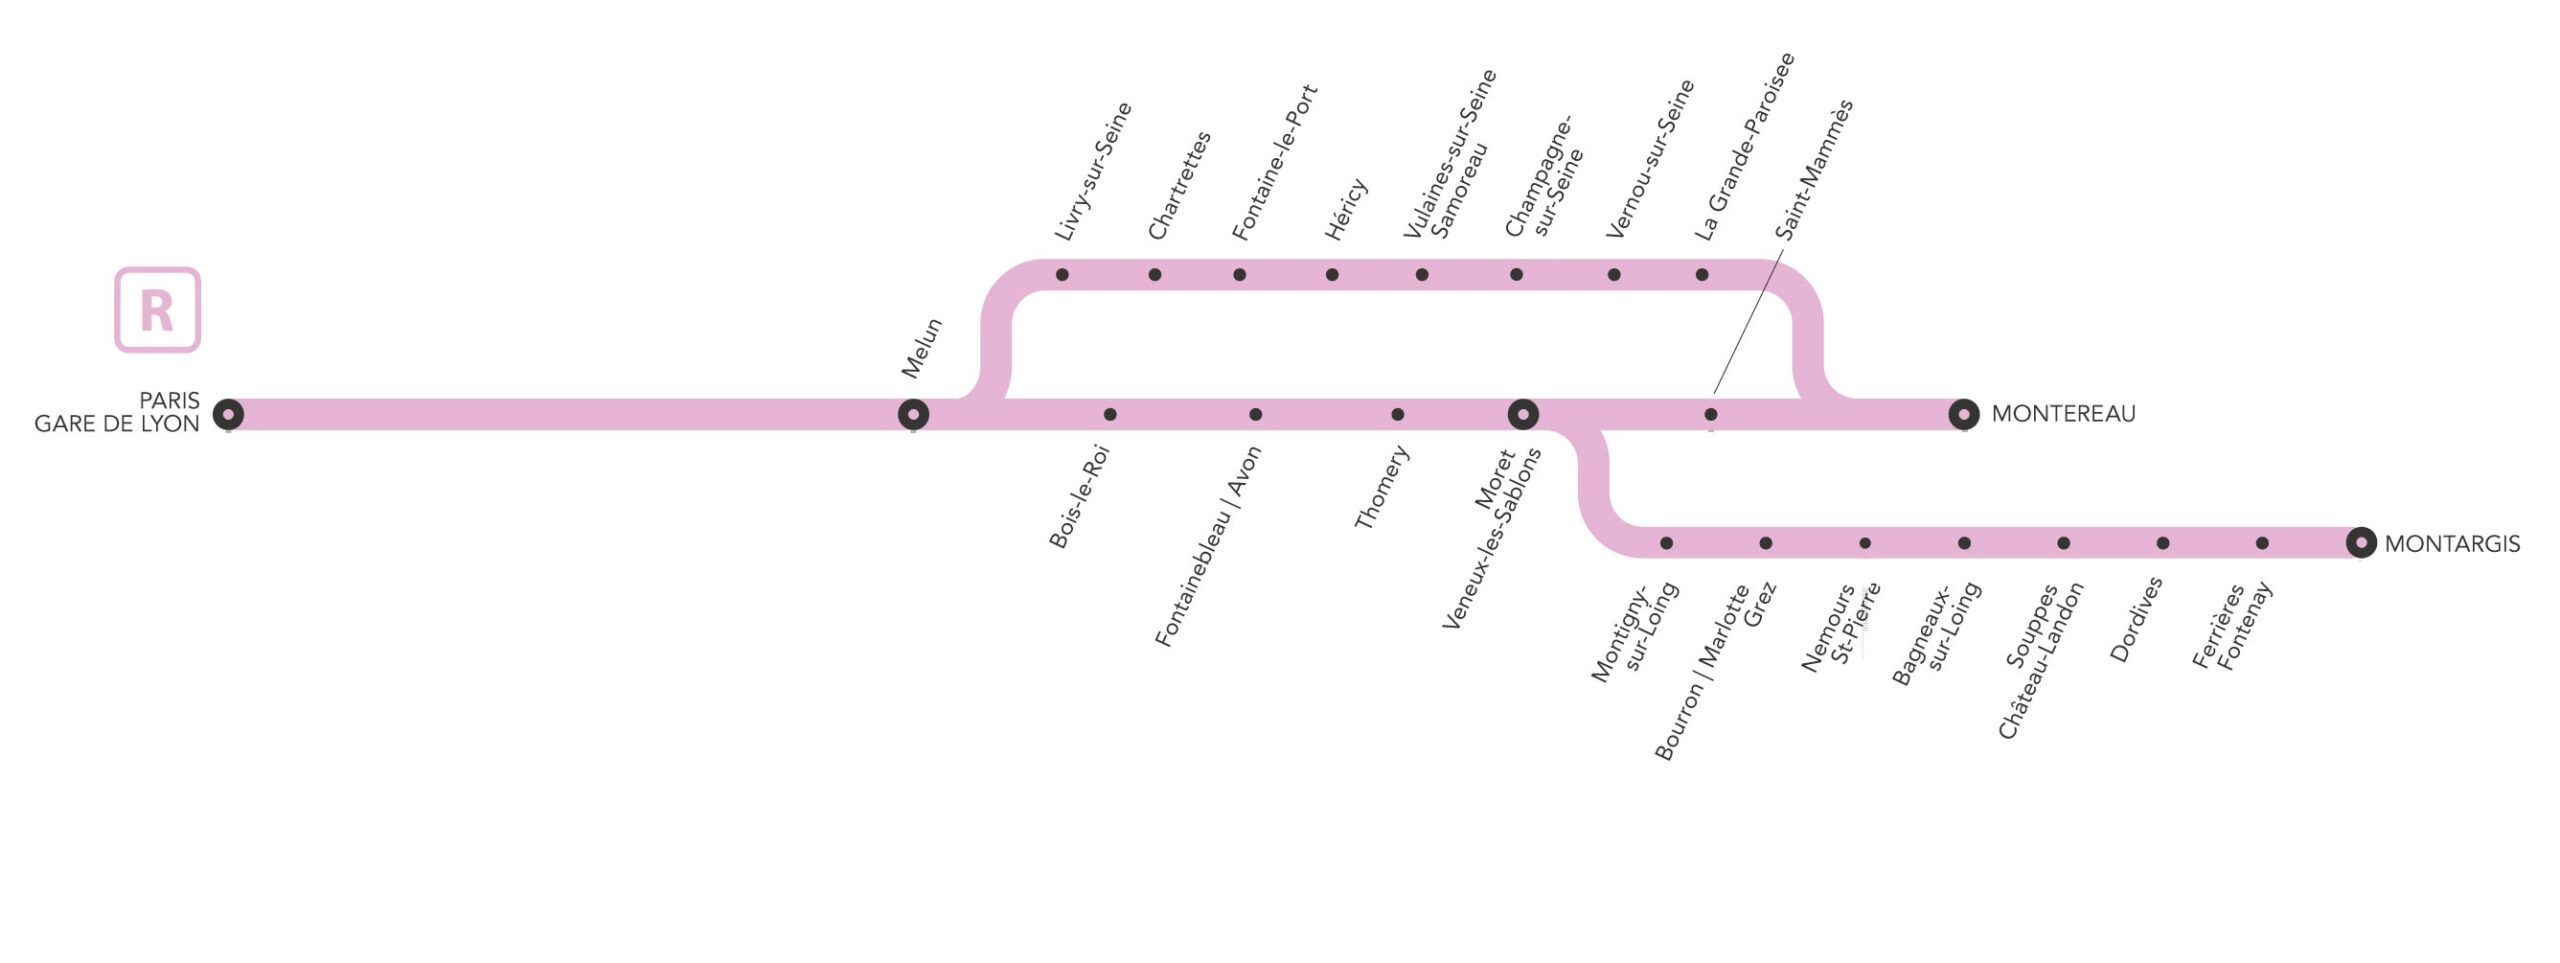 Cartographie des services en gare Ligne R